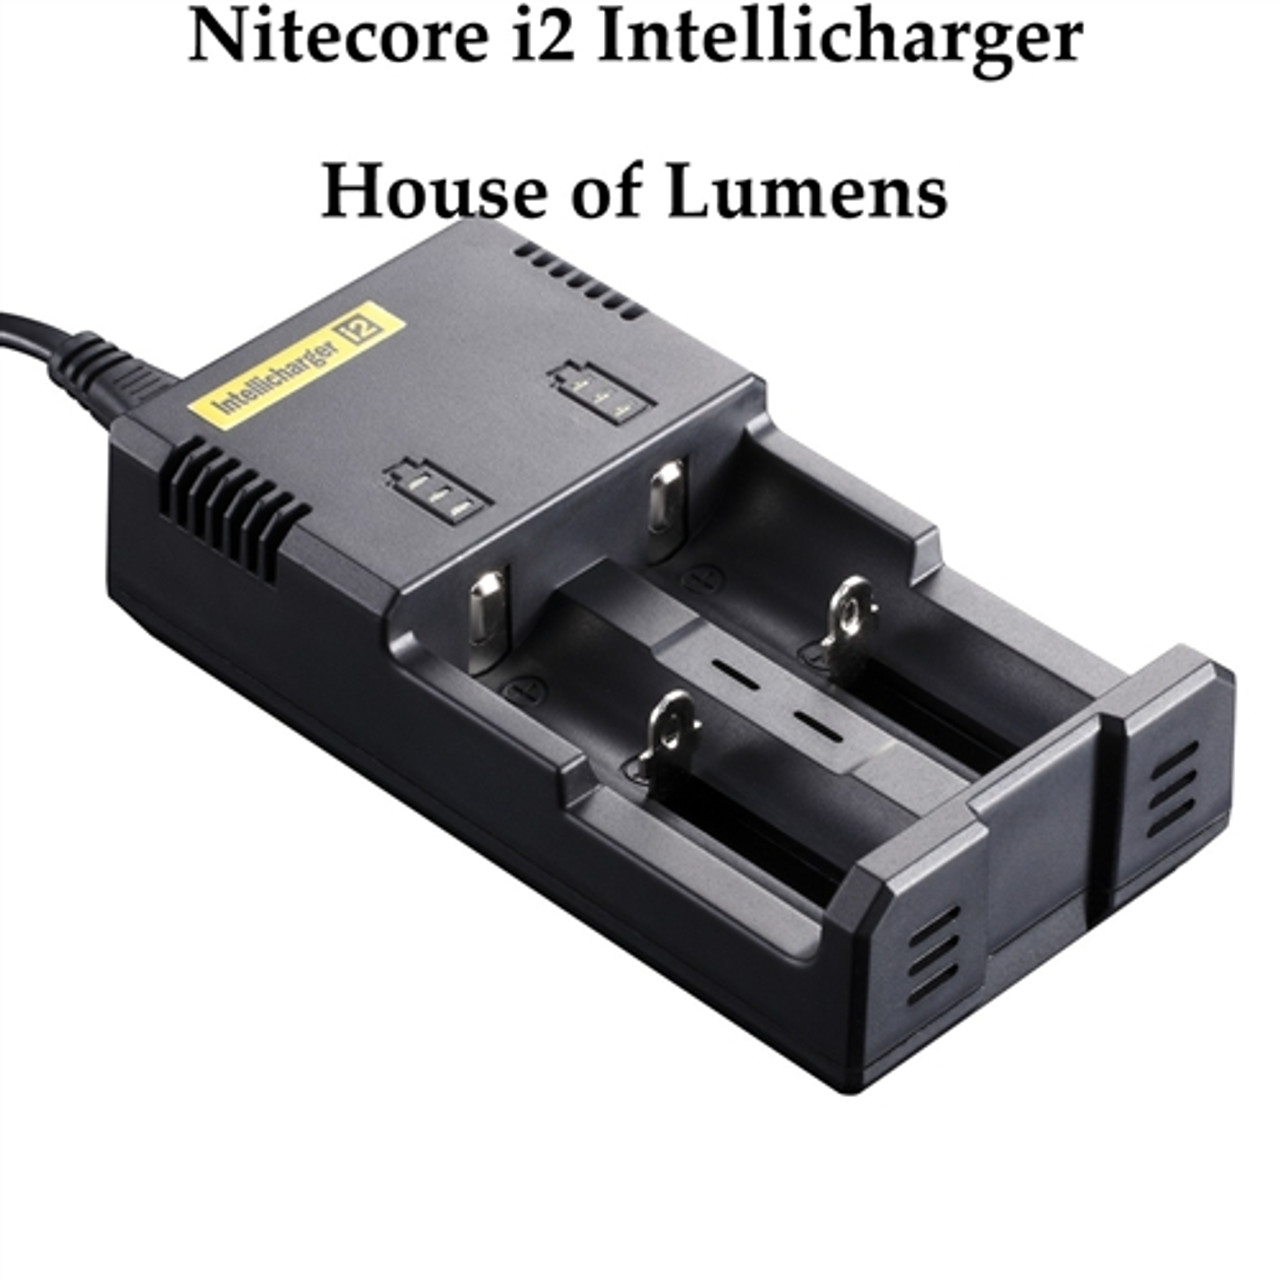 Chargeur Nitecore I2, chargeur accu Nitecore, chargeur Nitecore I2